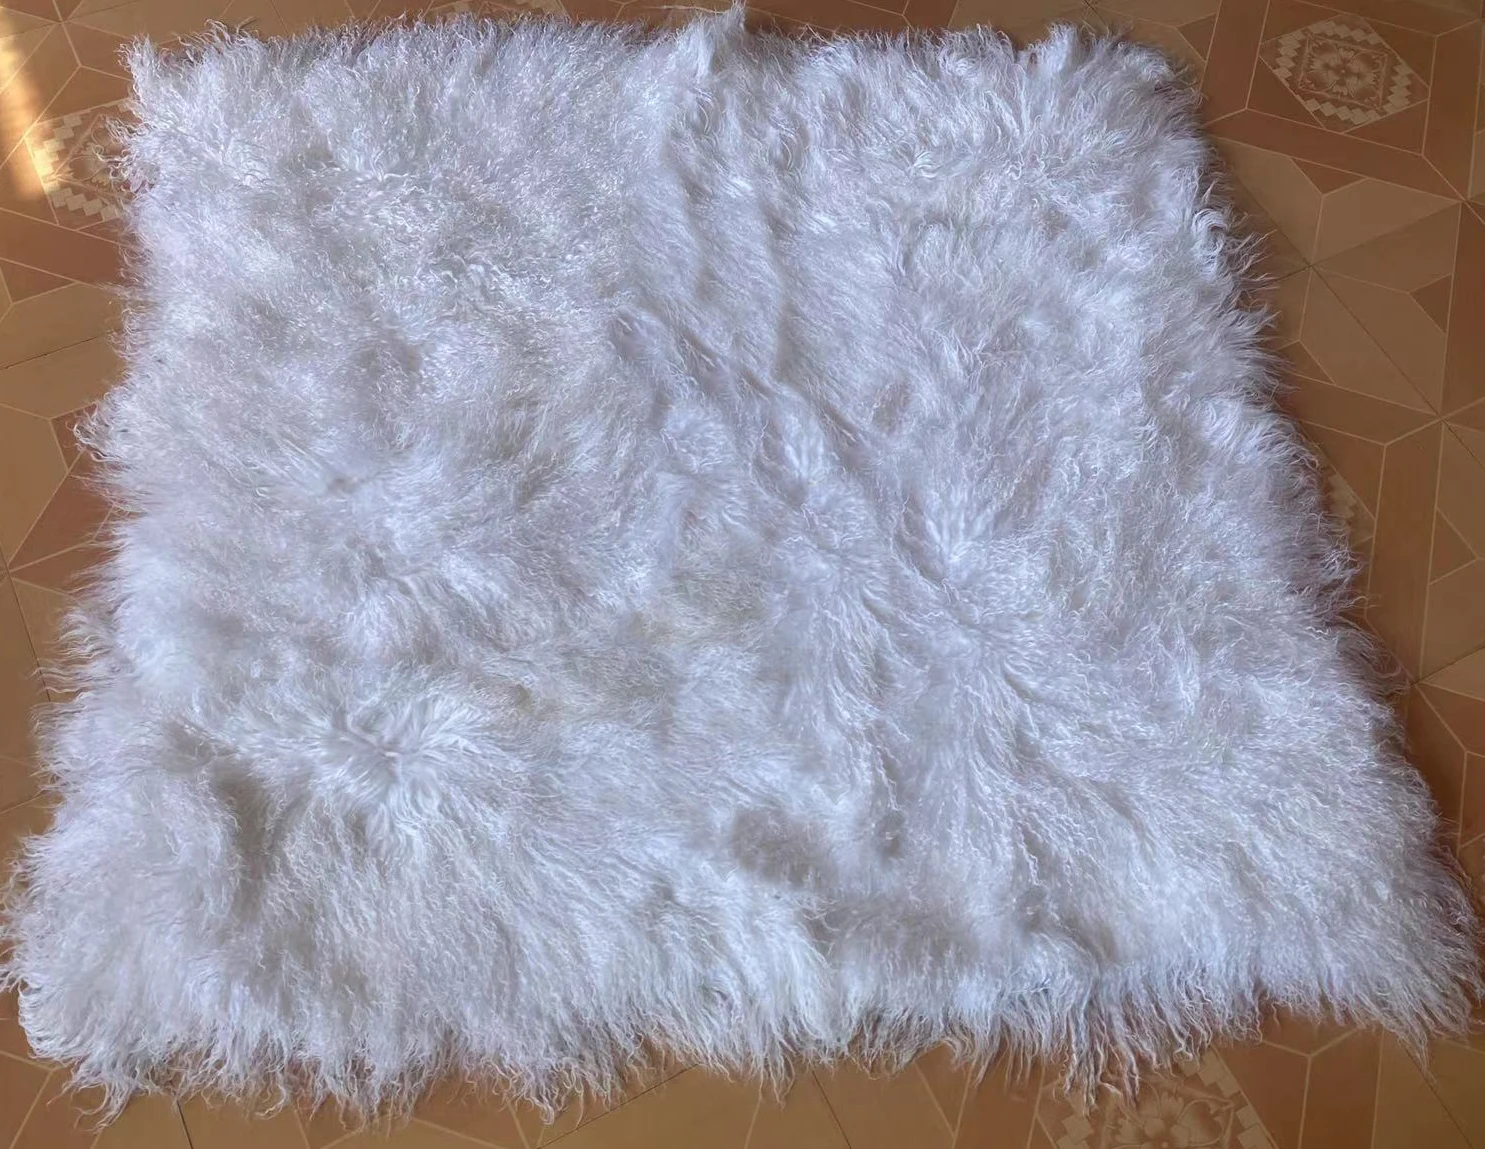 

WHite Tibetan Lamb Rug, Sheepskin Blanket, Mongolian Fur Carpet for Bedroom, Throw Floor Mat, Christmas Decoration, Home Decor